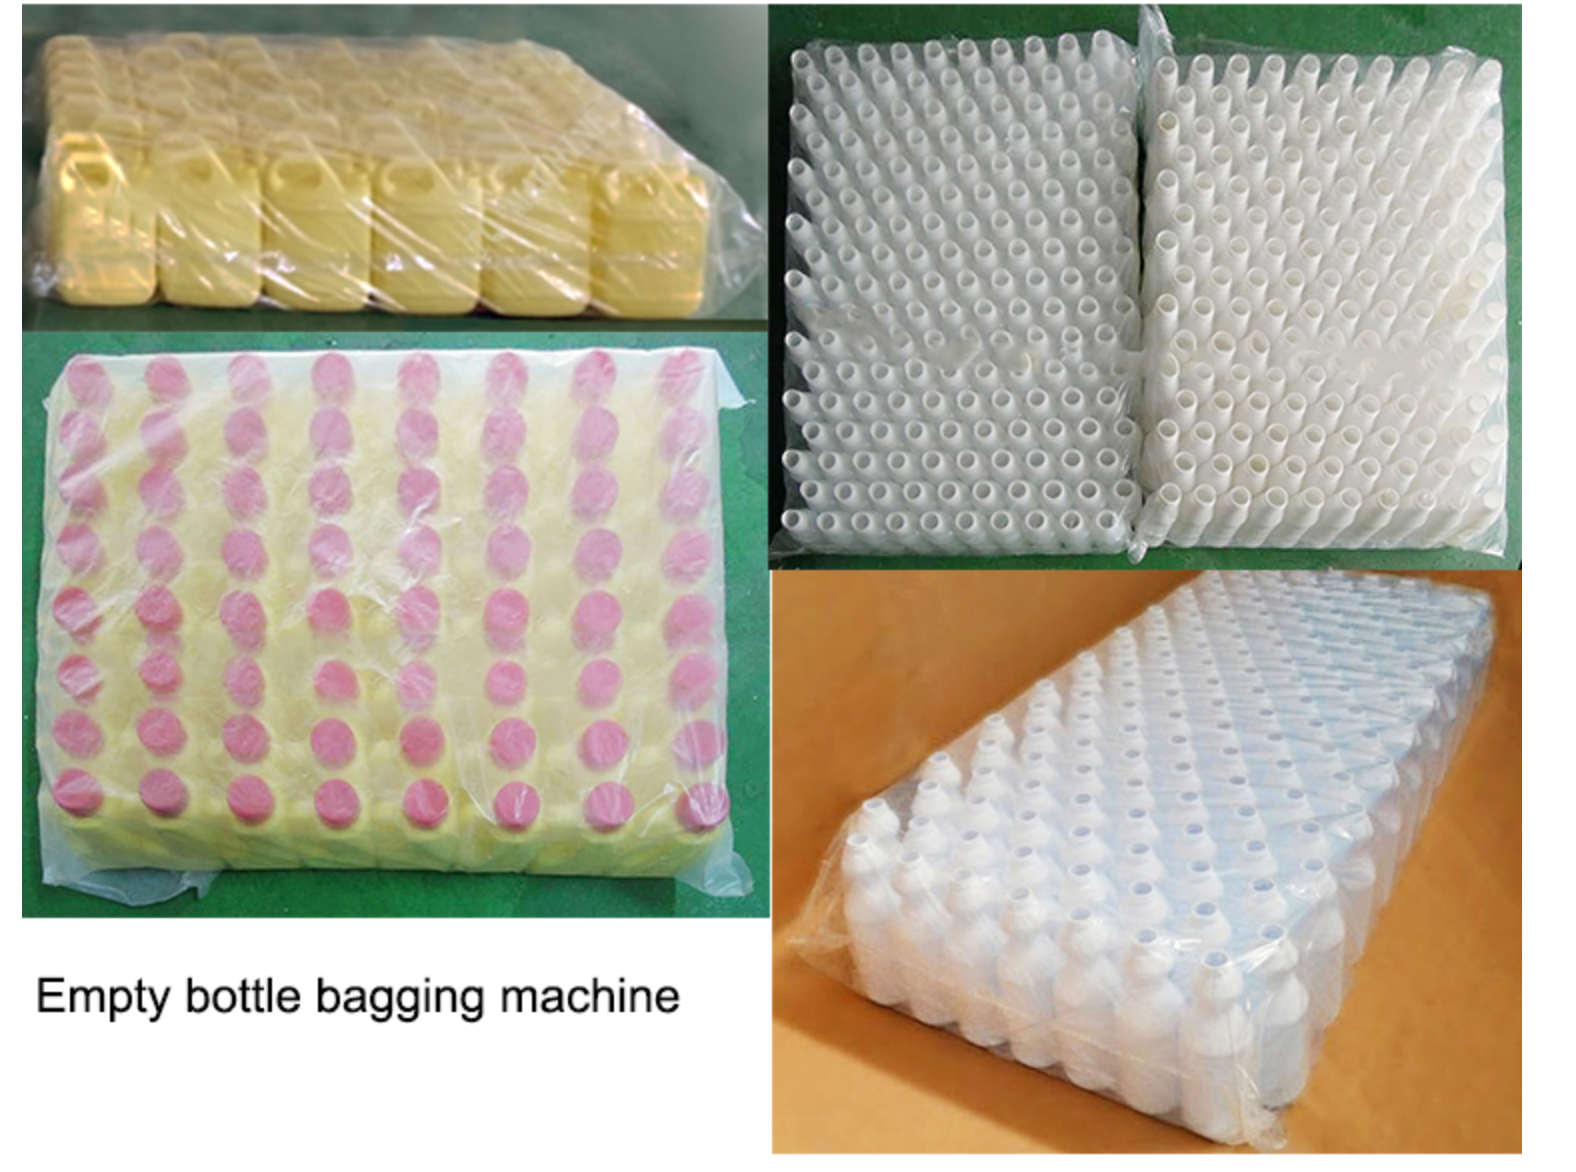 Vollautomatische Verpackungsmaschine für leere Plastikflaschenbeutel